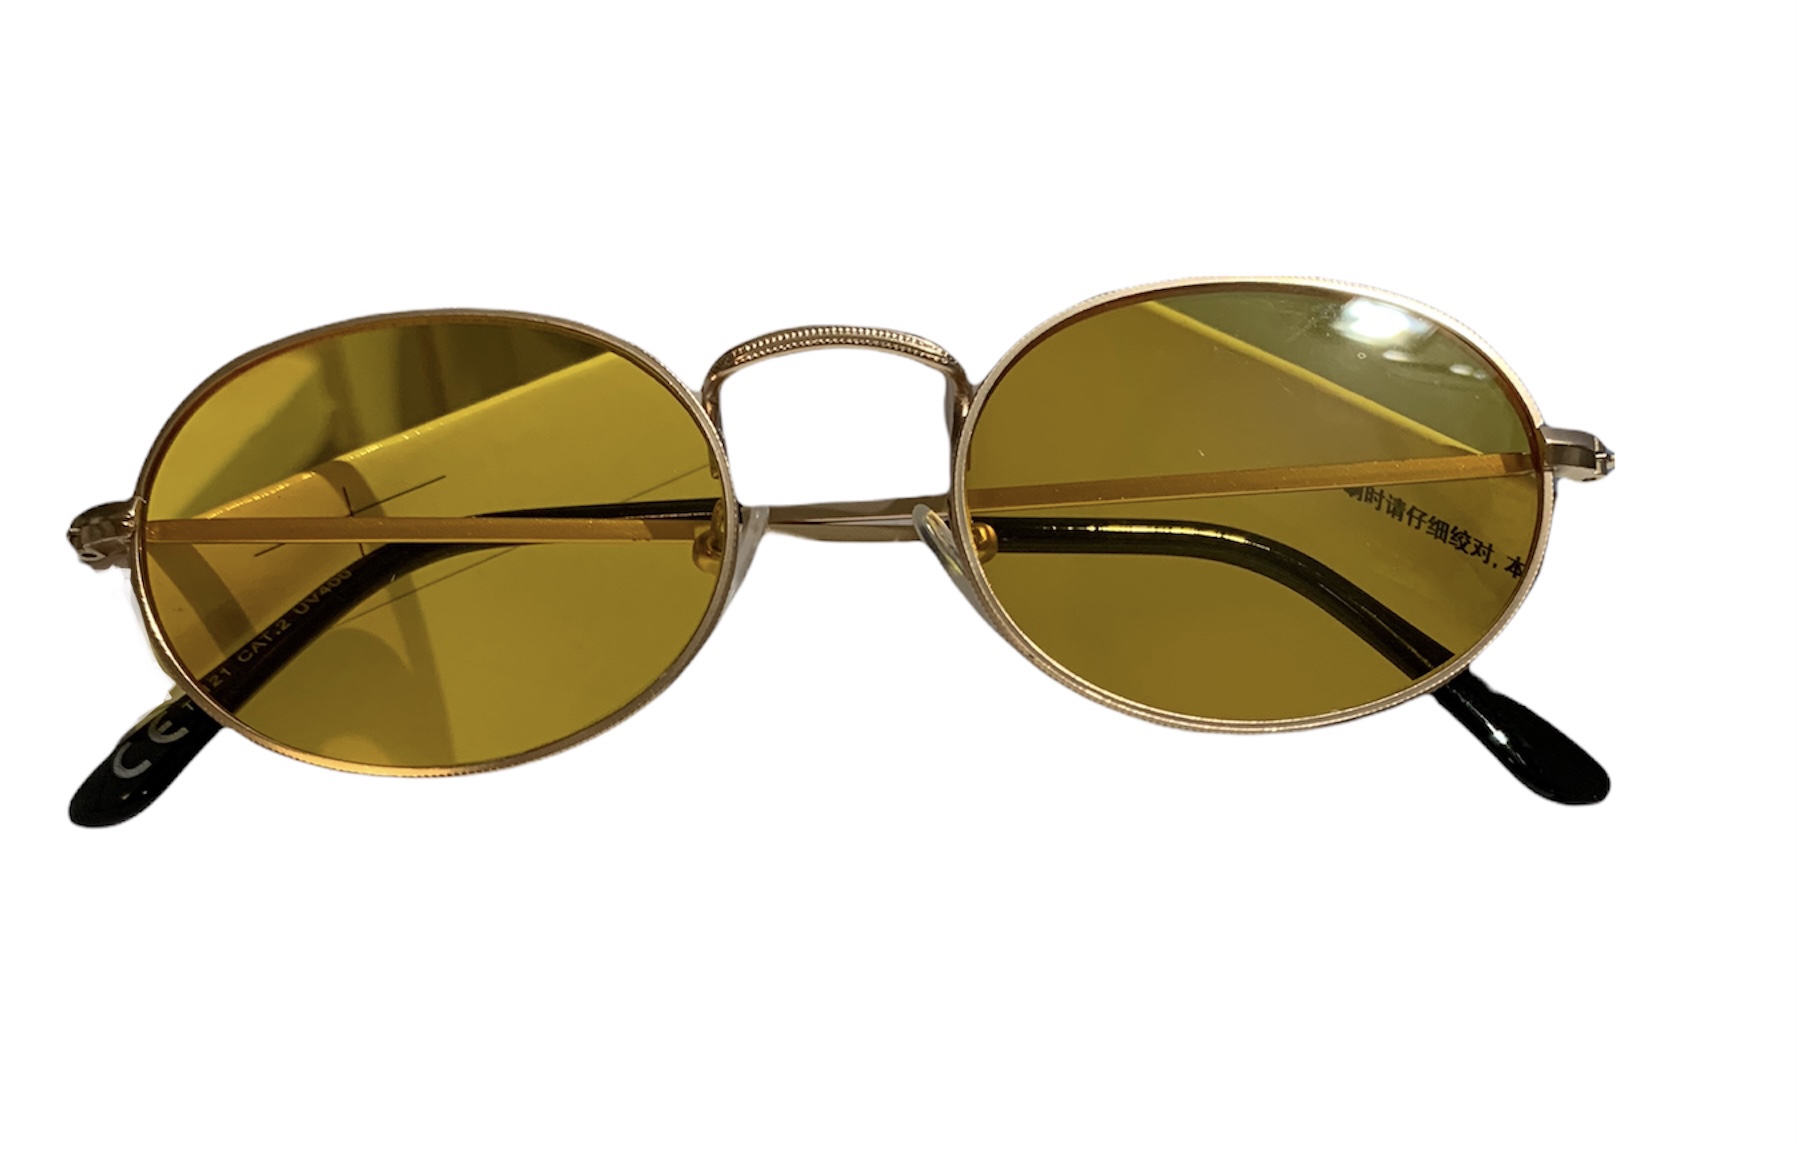 Solbriller glas - Guld-Gul - SOLBRILLER - Znoopy.dk